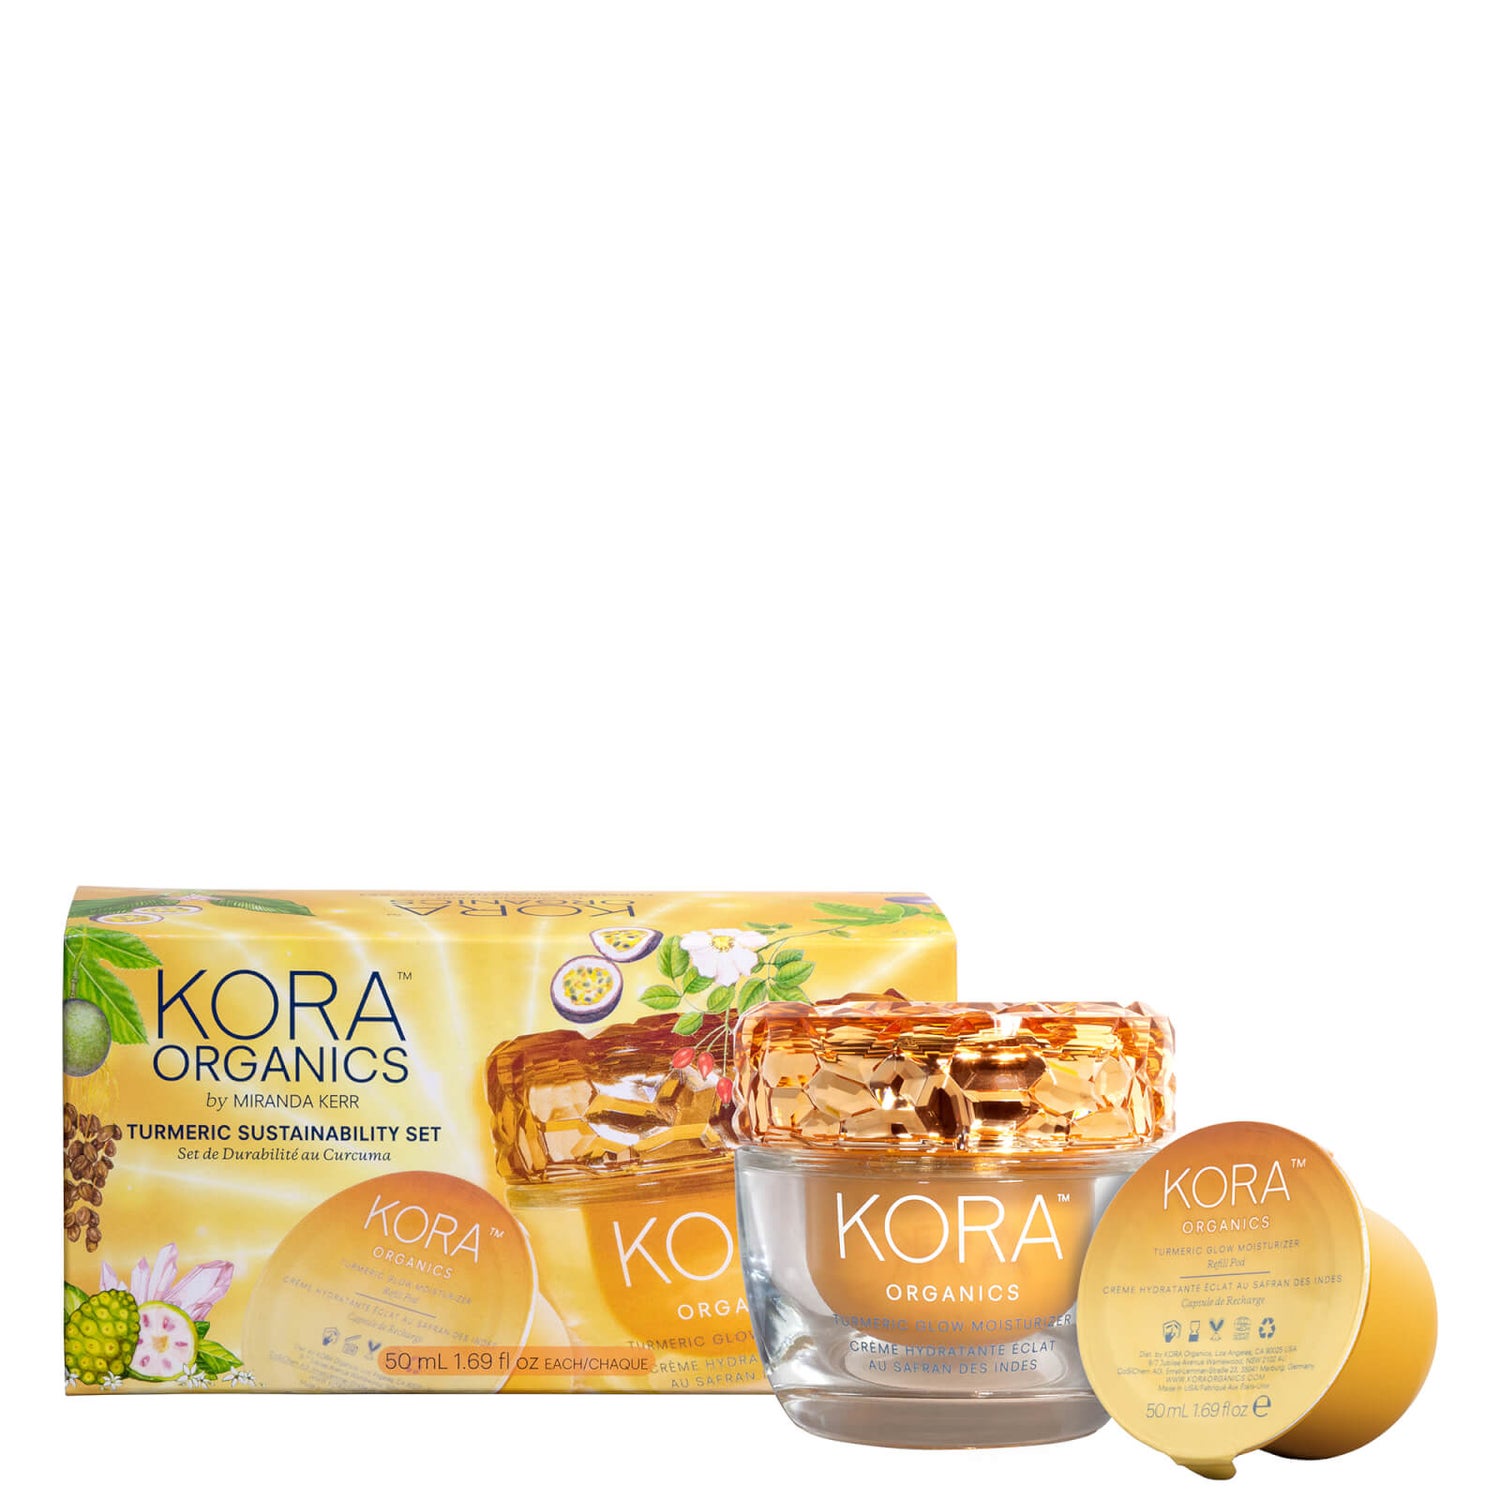 Kora Organics Turmeric Sustainability Set (Worth $144.00)